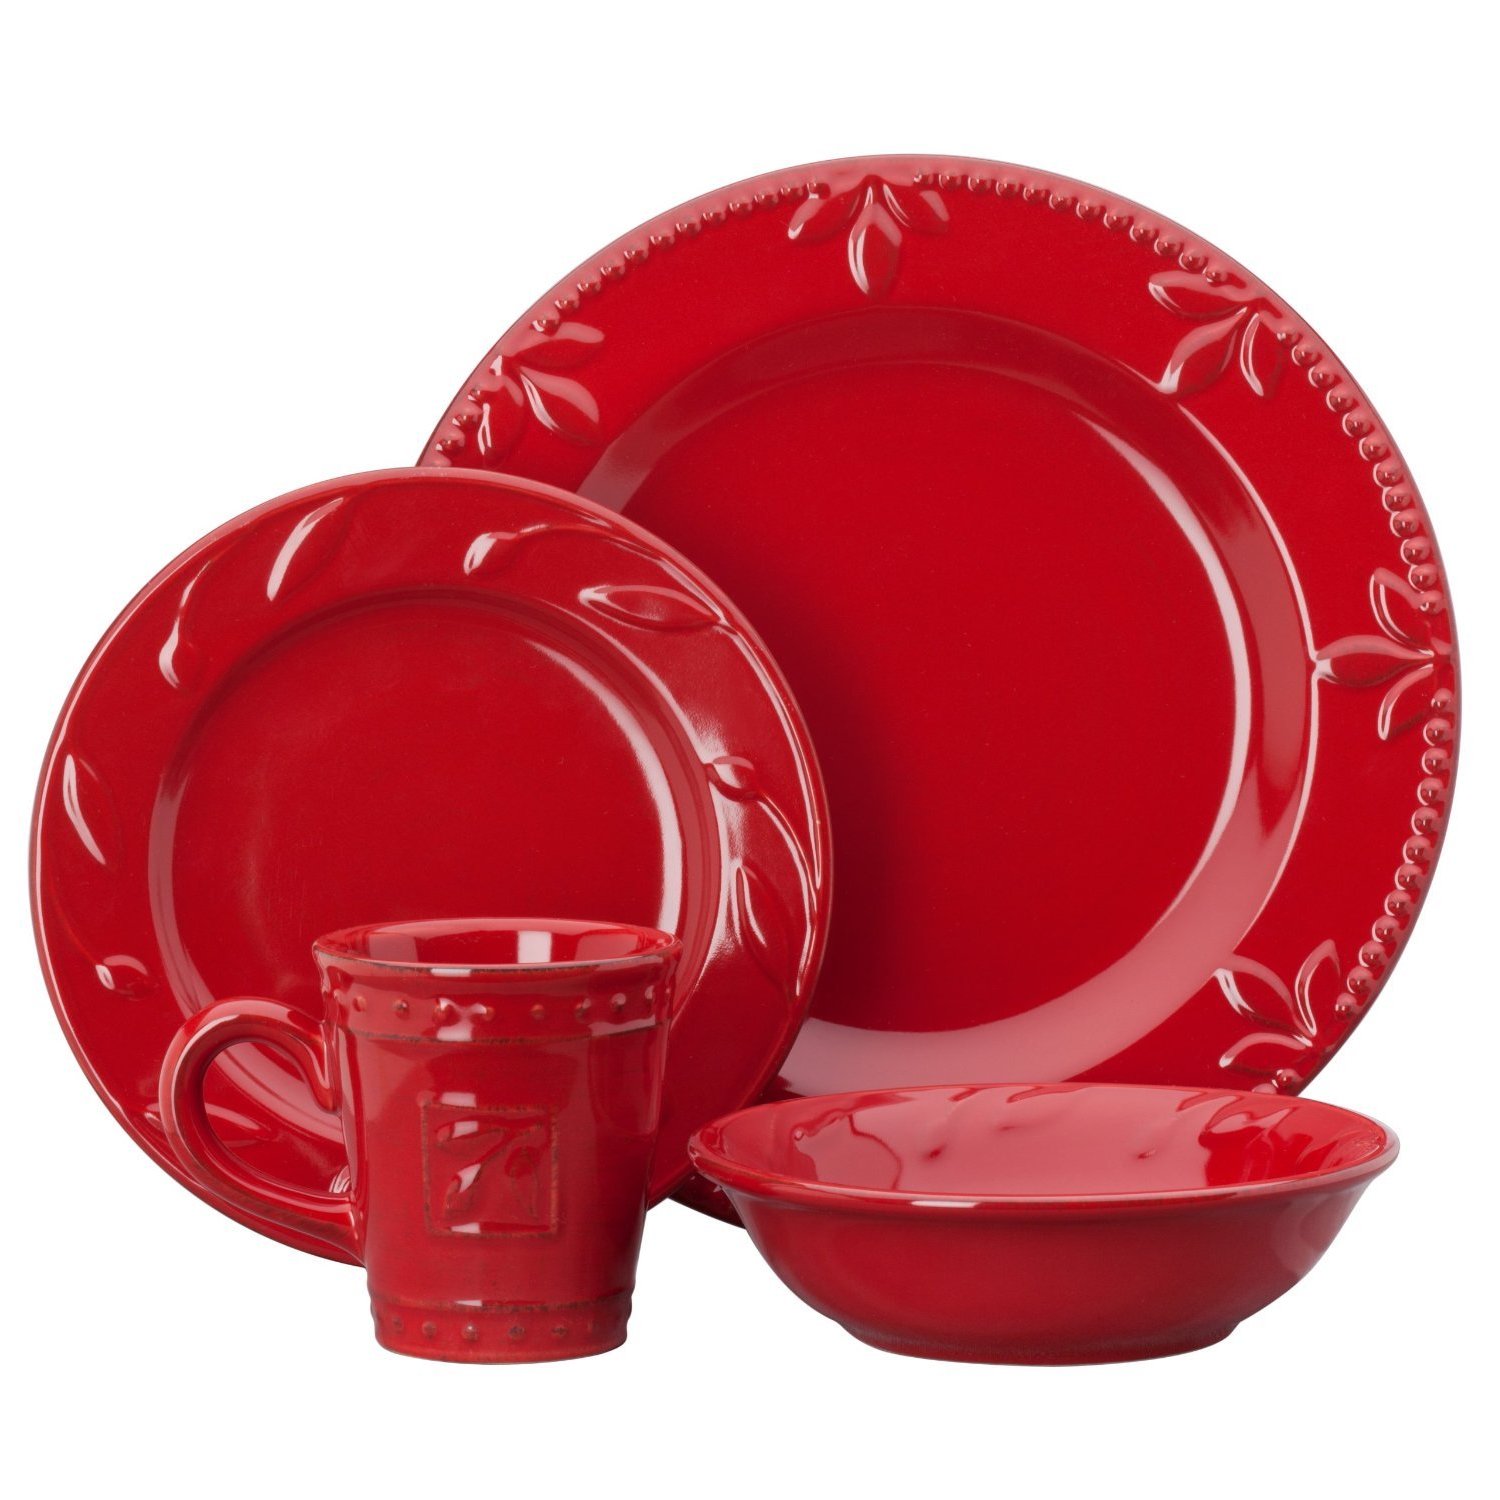 Купить красную посуду. Красная посуда. Набор посуды красный. Набор столовой посуды красный. Красная тарелка.